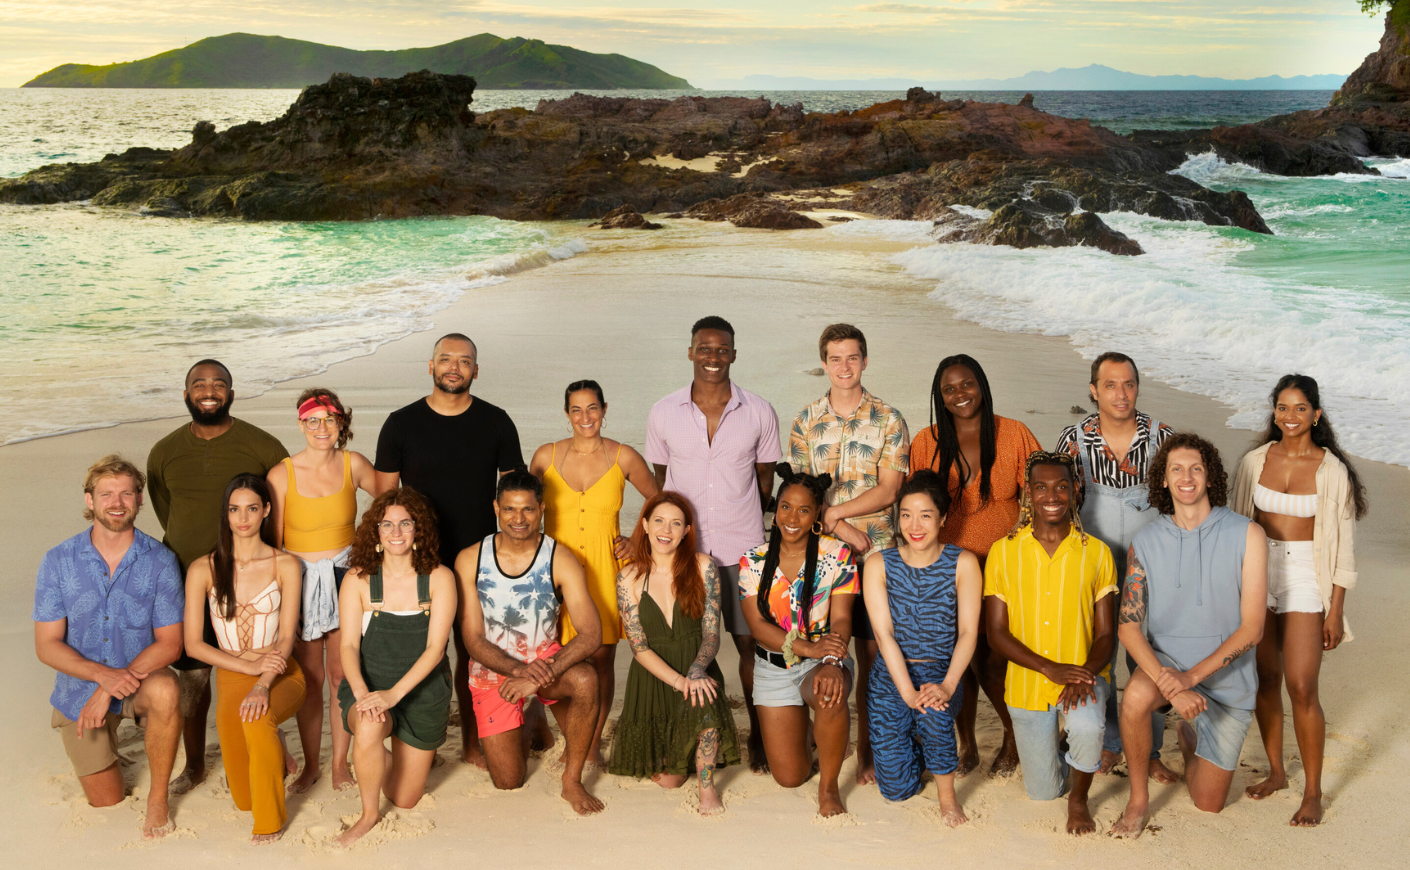 The cast of Survivor 46